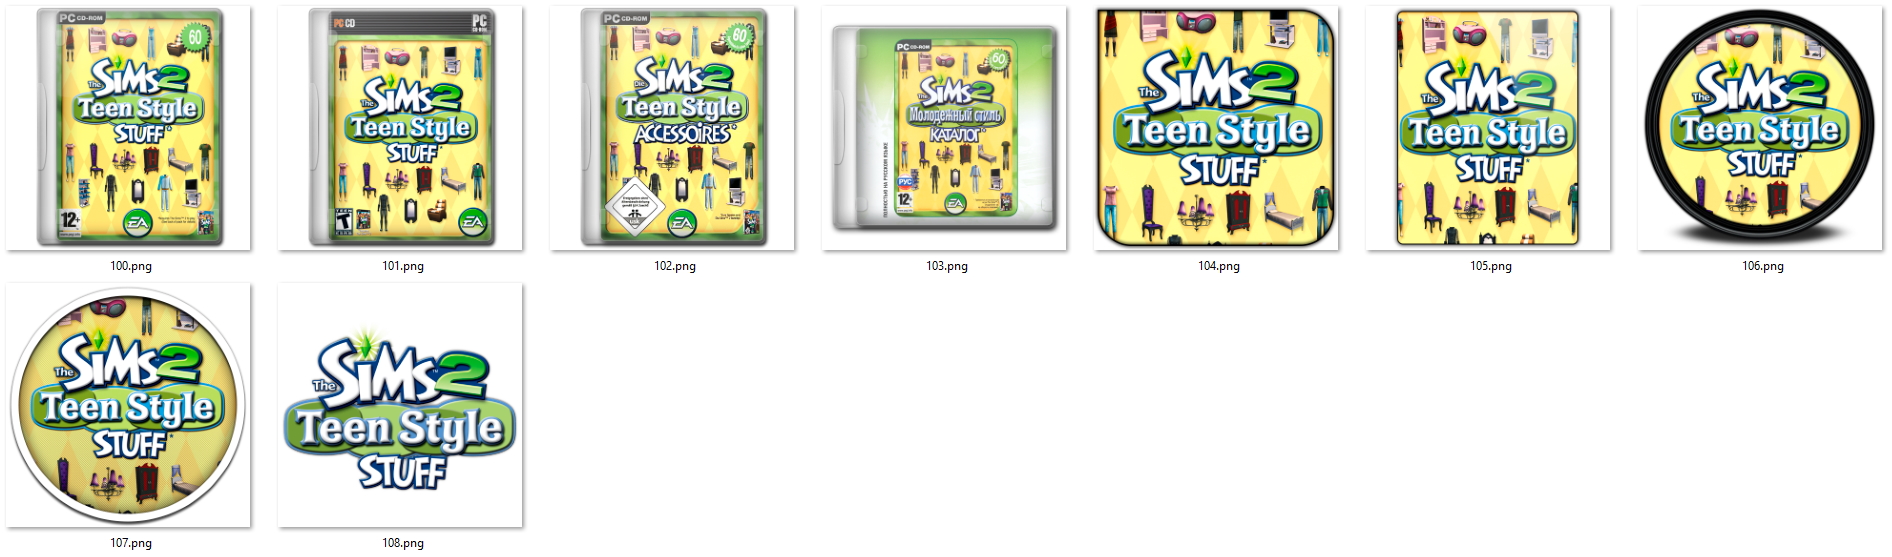 Иконки из набора к игре The Sims 2 Teen Style Stuff